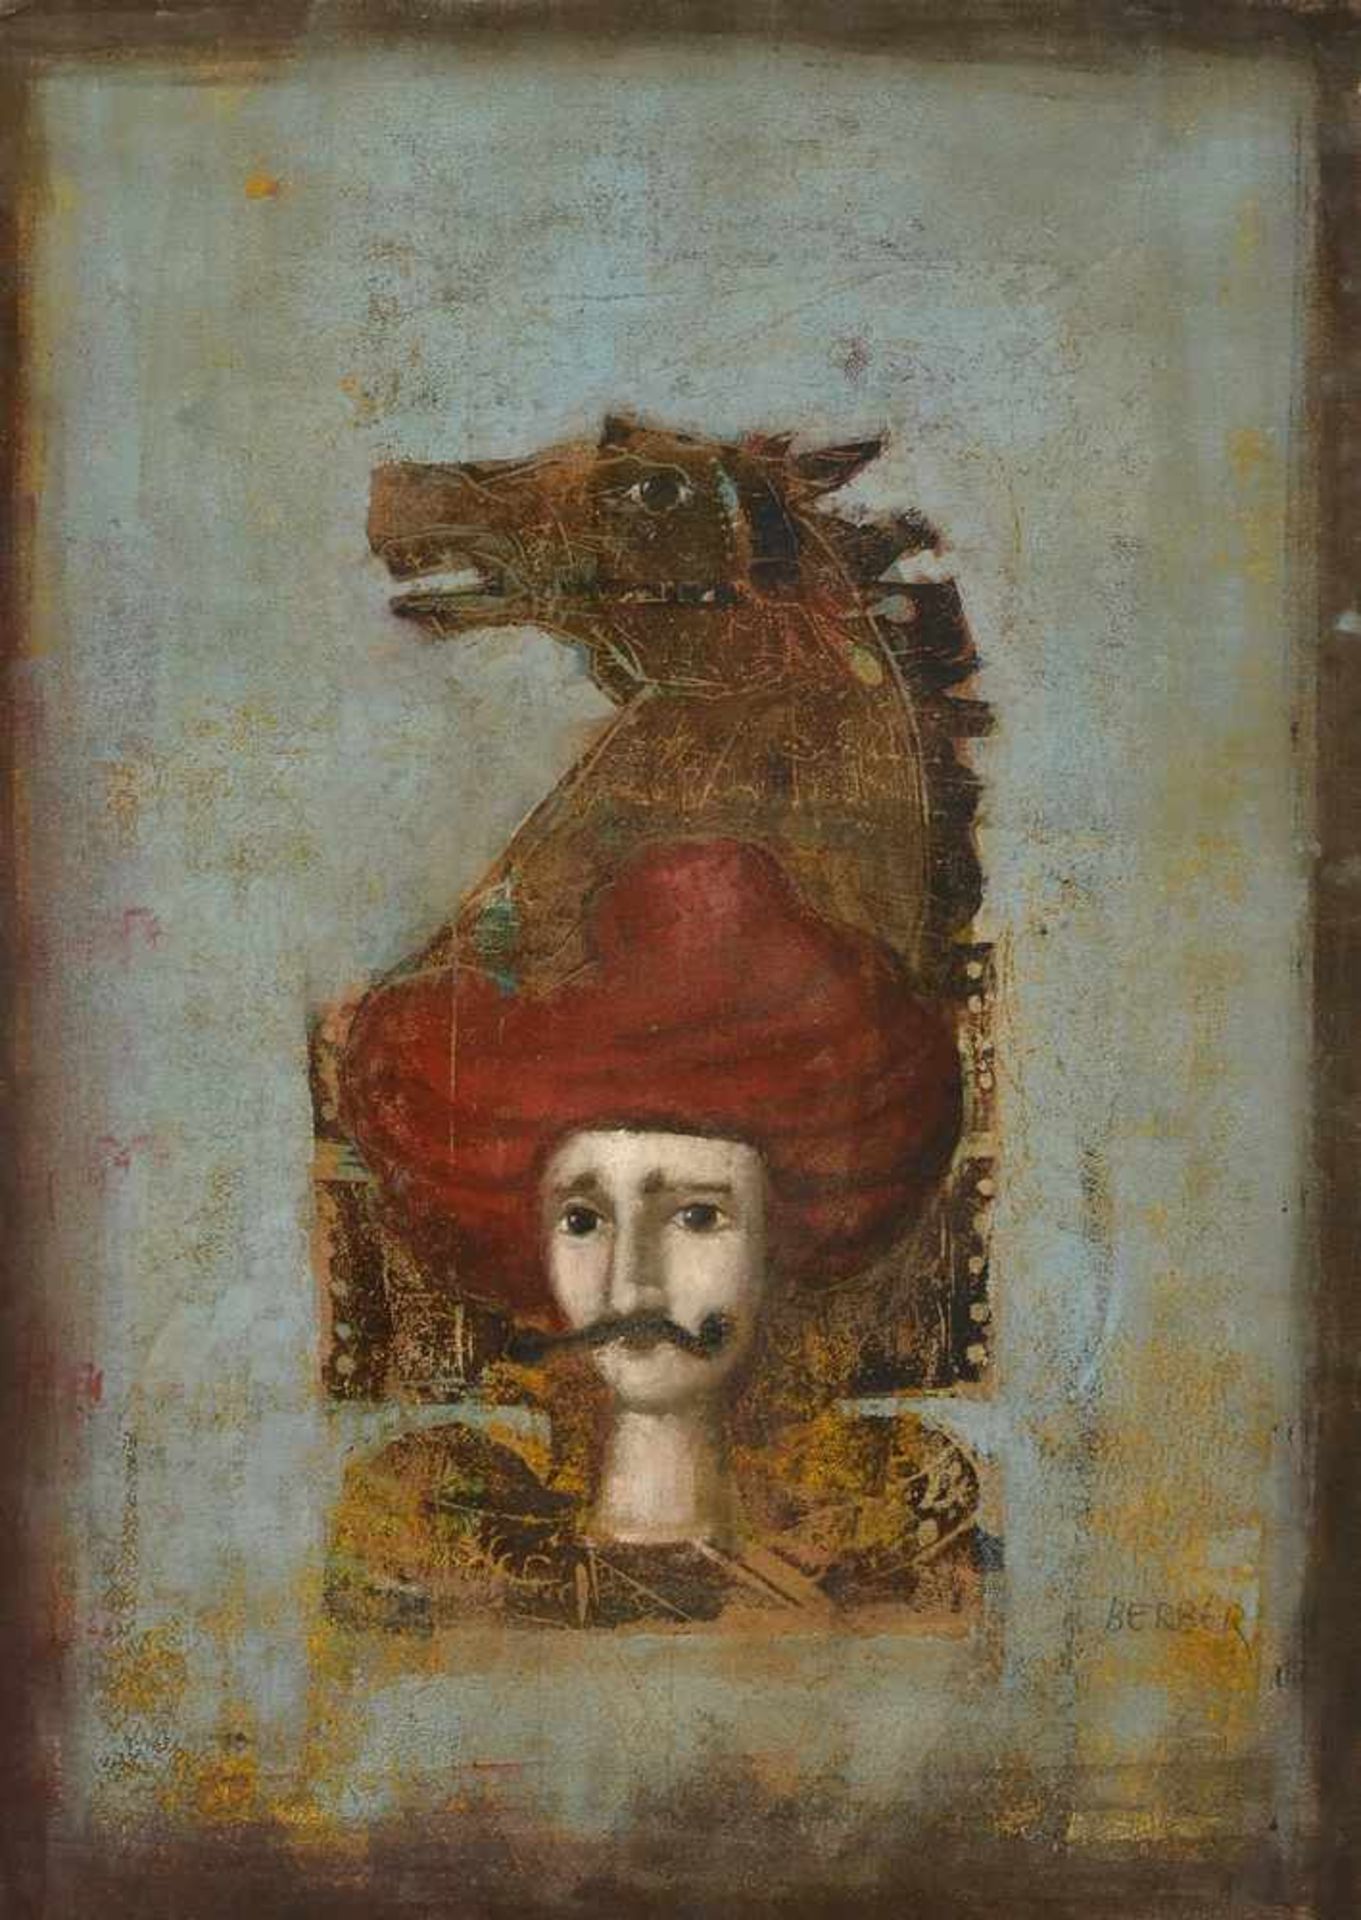 Berber, Mersad (1940-2012) "Orientale mit Pferd", Farbholzschnitt, Öl und Goldfolie auf Velin, 53,